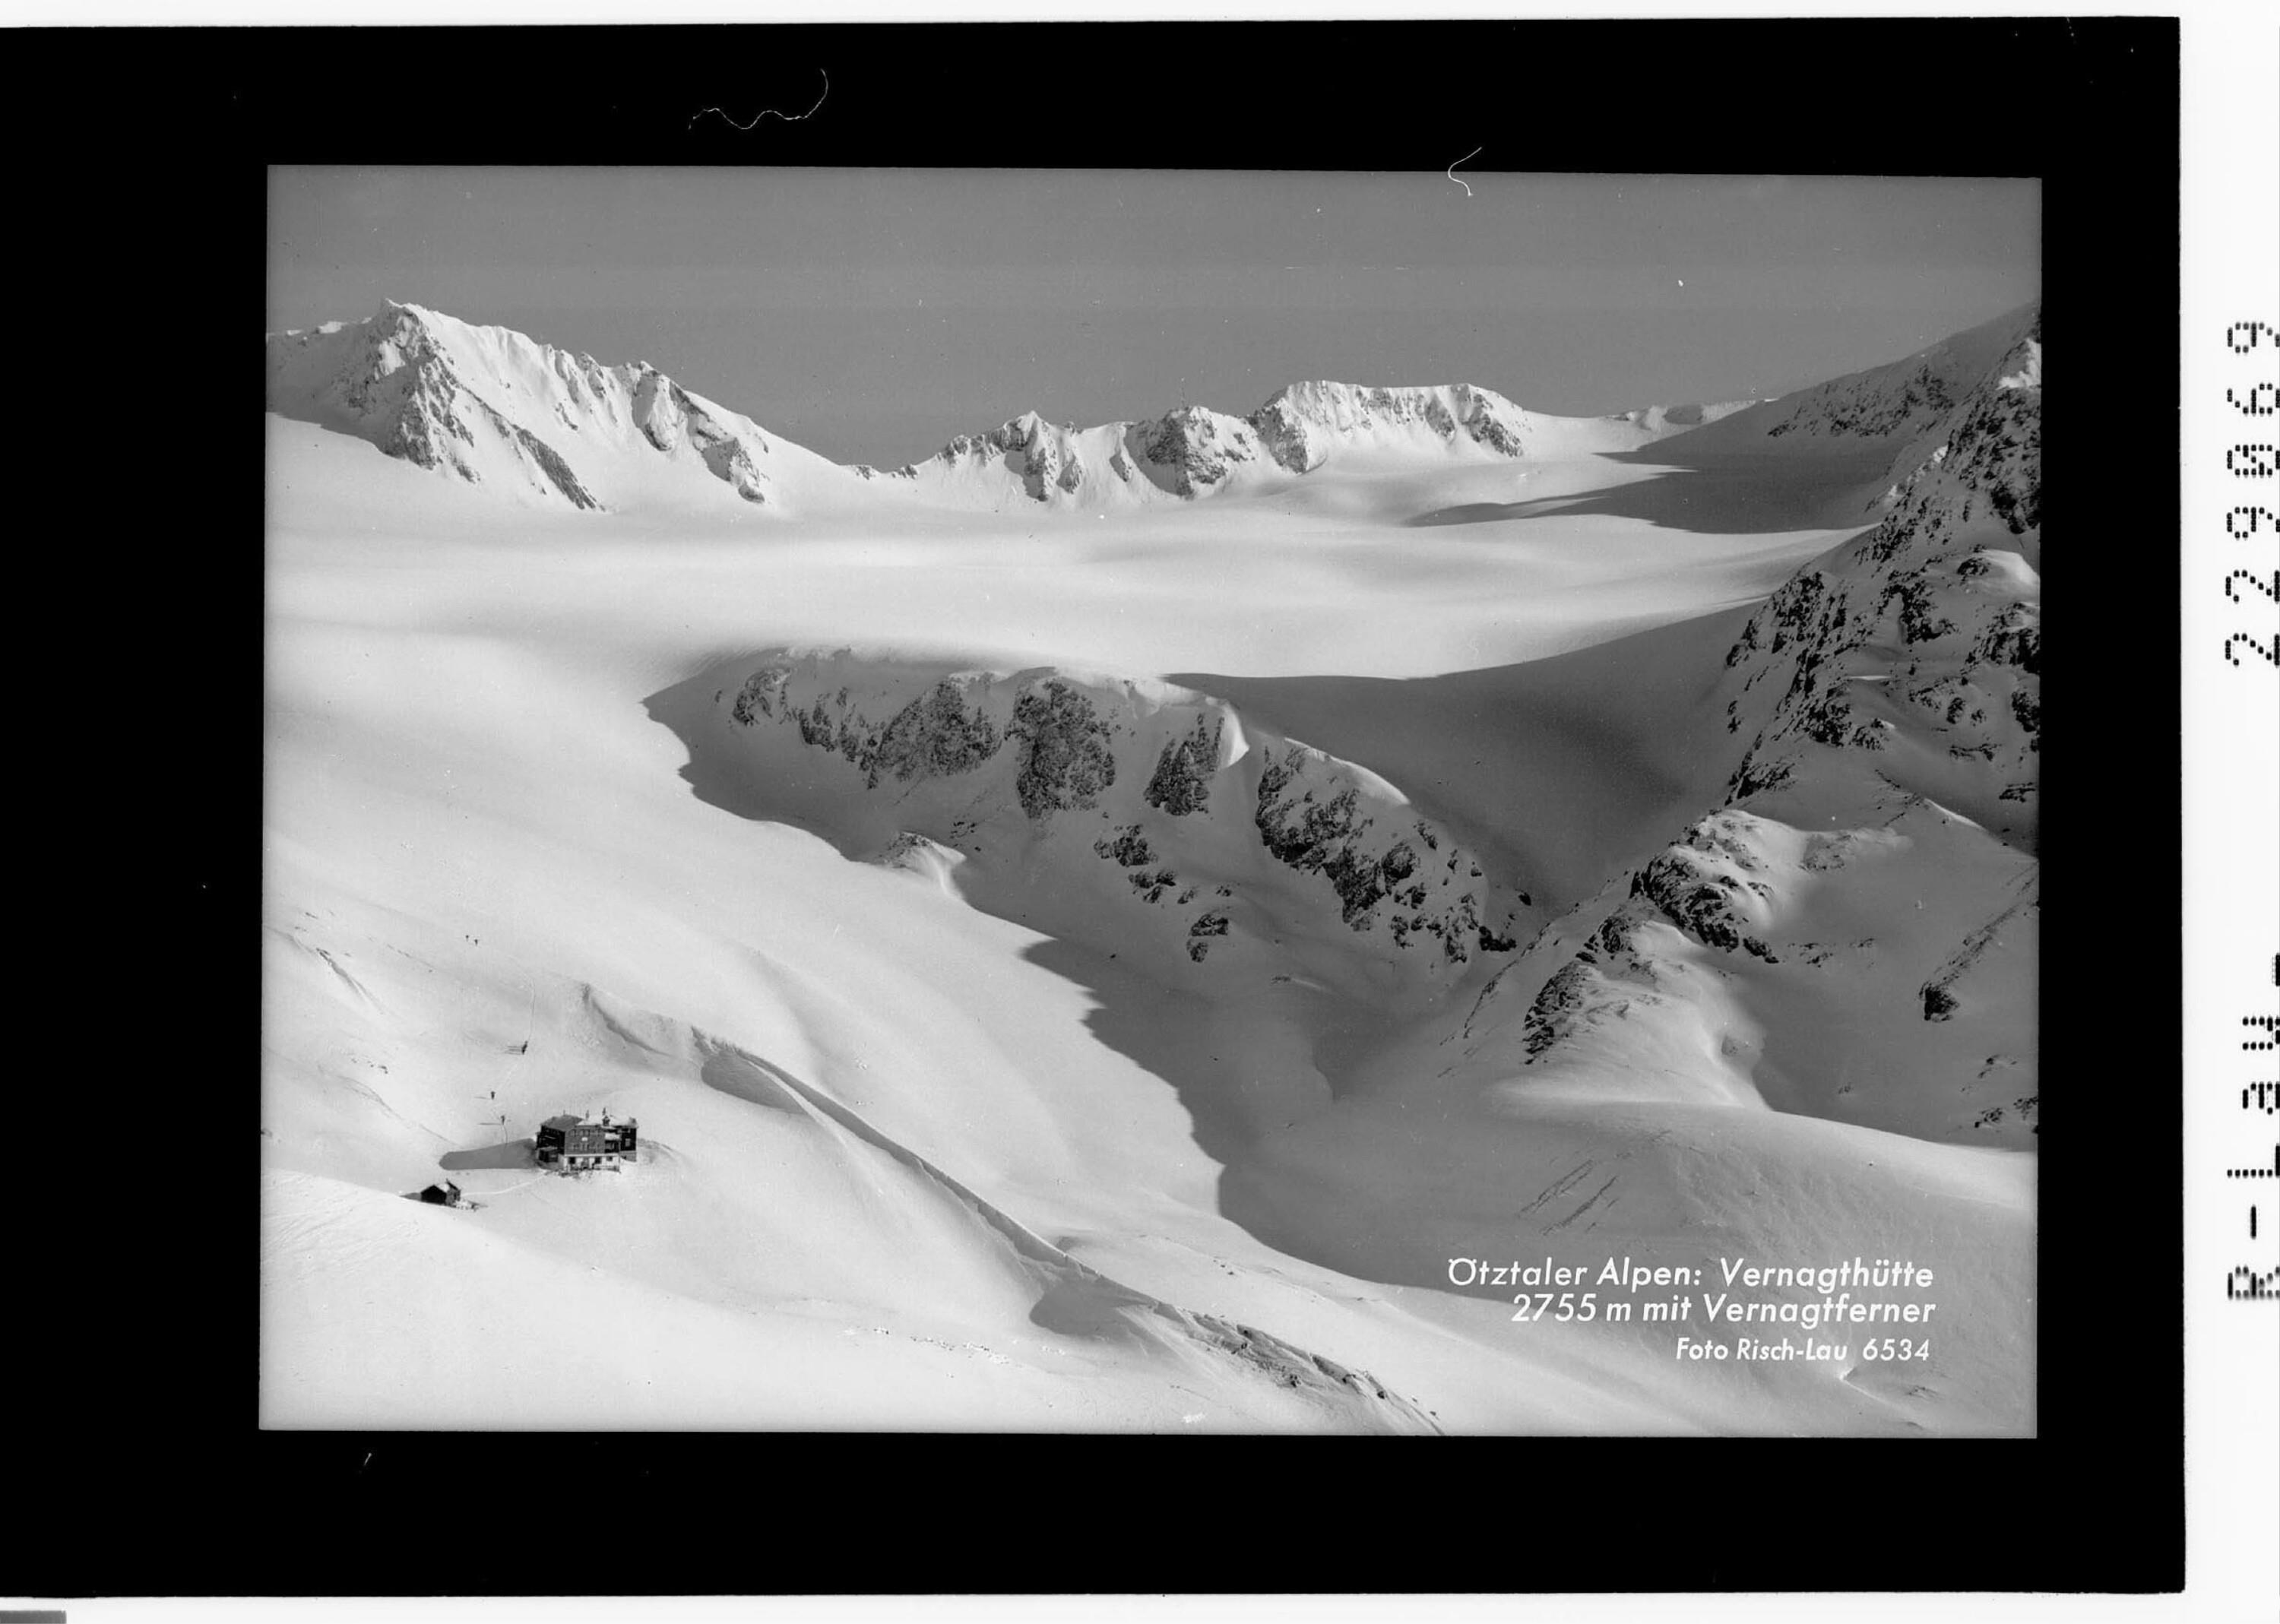 Ötztaler Alpen / Vernagthütte 2755 m mit Vernagtferner></div>


    <hr>
    <div class=